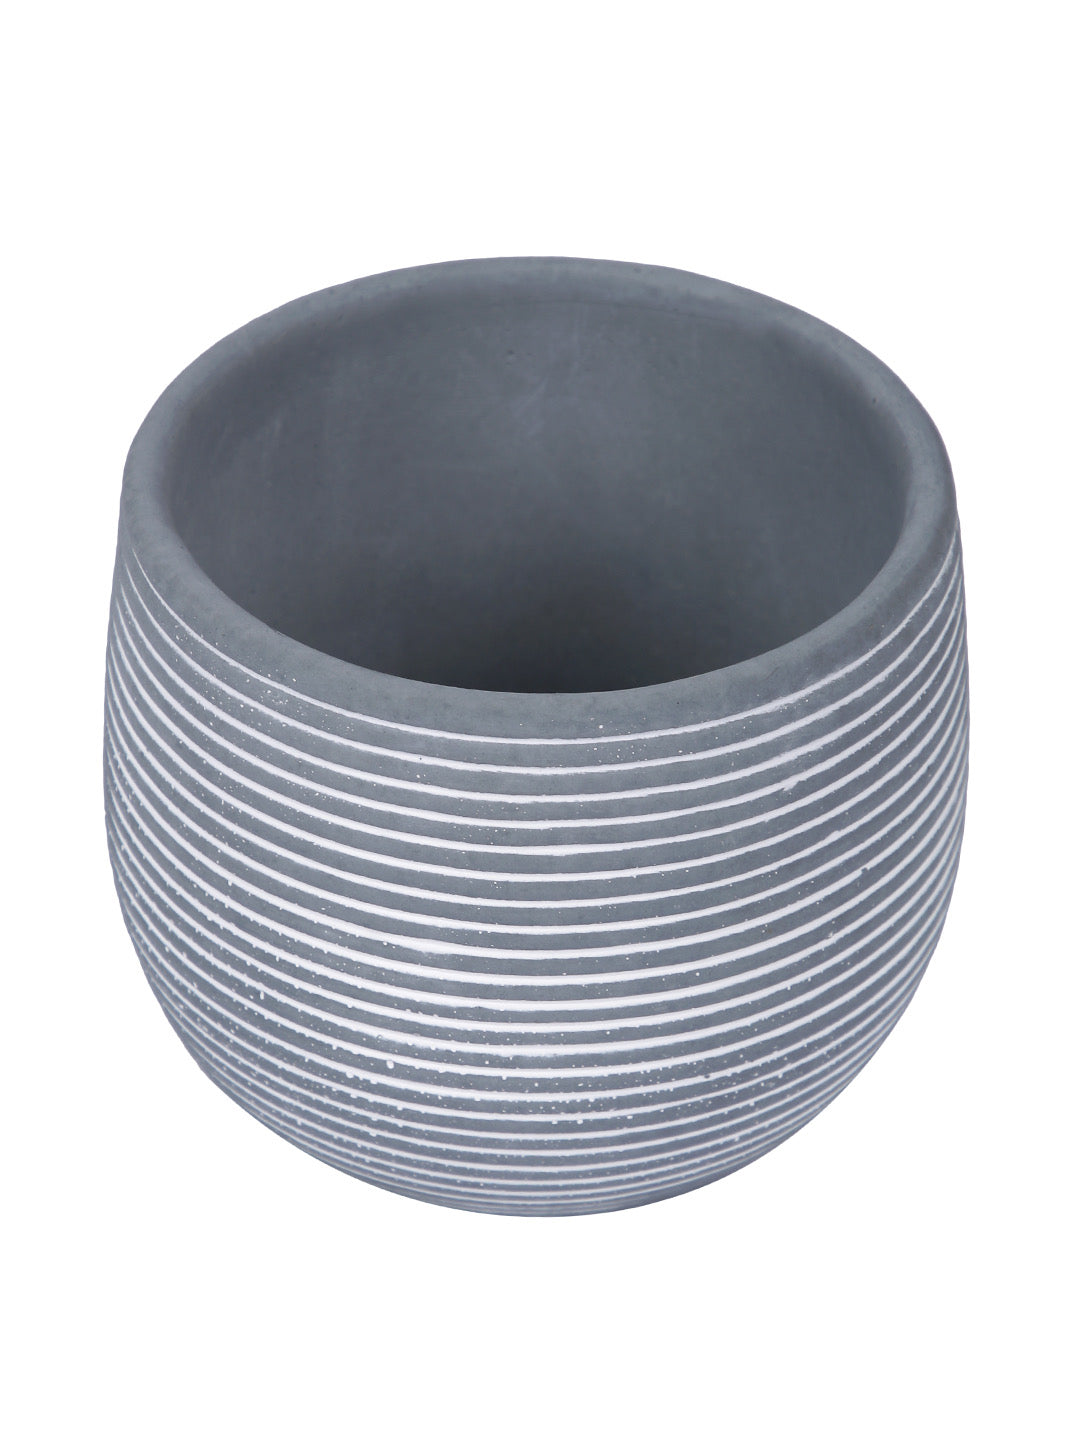 Spiral Design Ceramic Round Planter - Default Title (CHC22337GRA)